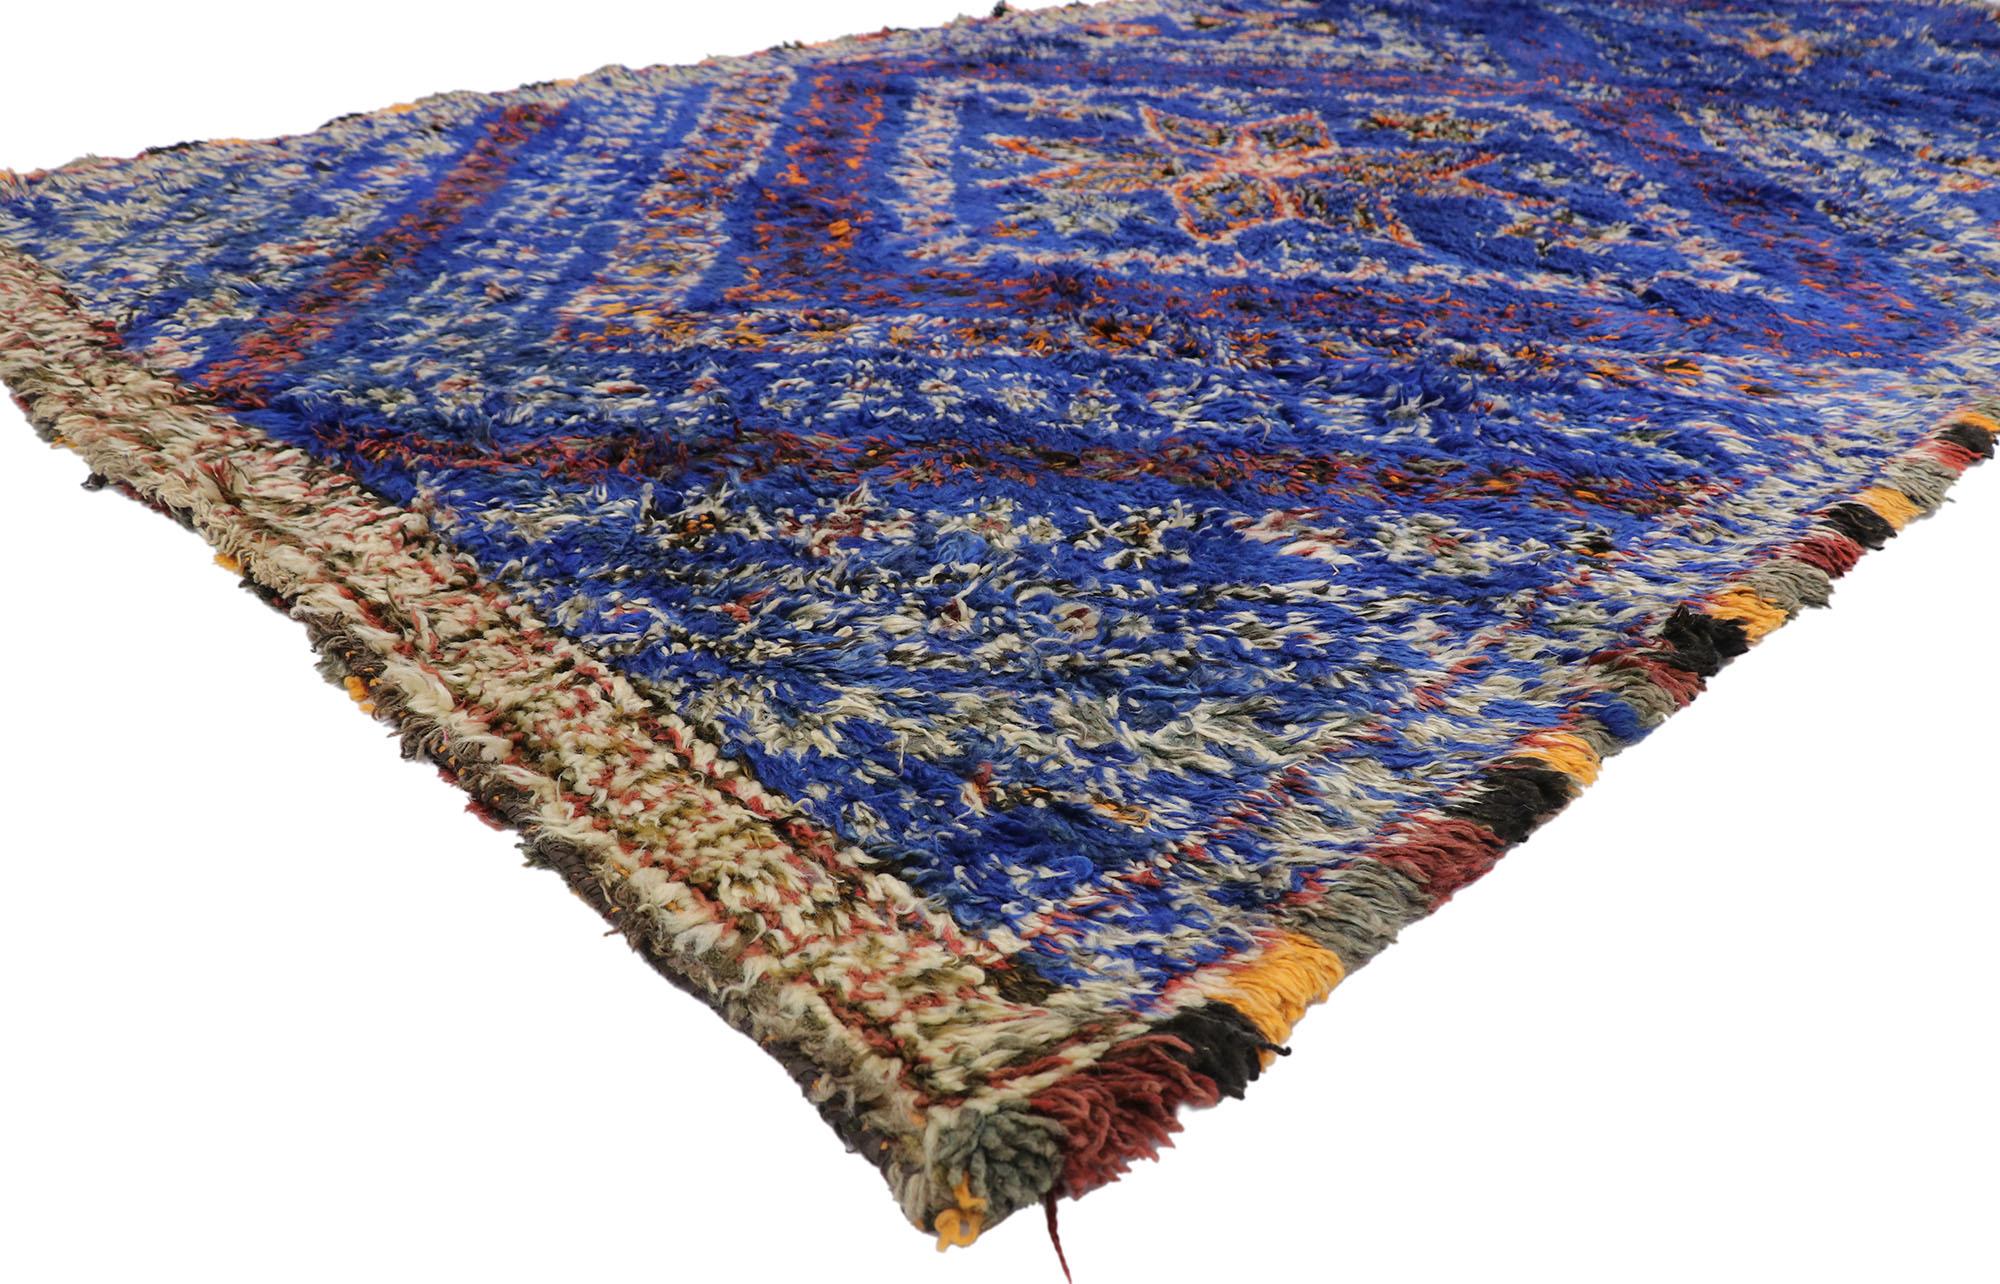 21337 Vintage Berber Blau Beni M'Guild marokkanischen Teppich mit Tribal Style 06'08 x 13'04. Dieser handgeknüpfte marokkanische Beni M'Guild-Teppich aus alter Berberwolle besticht durch sein kühnes, ausdrucksstarkes Design, seine unglaublichen